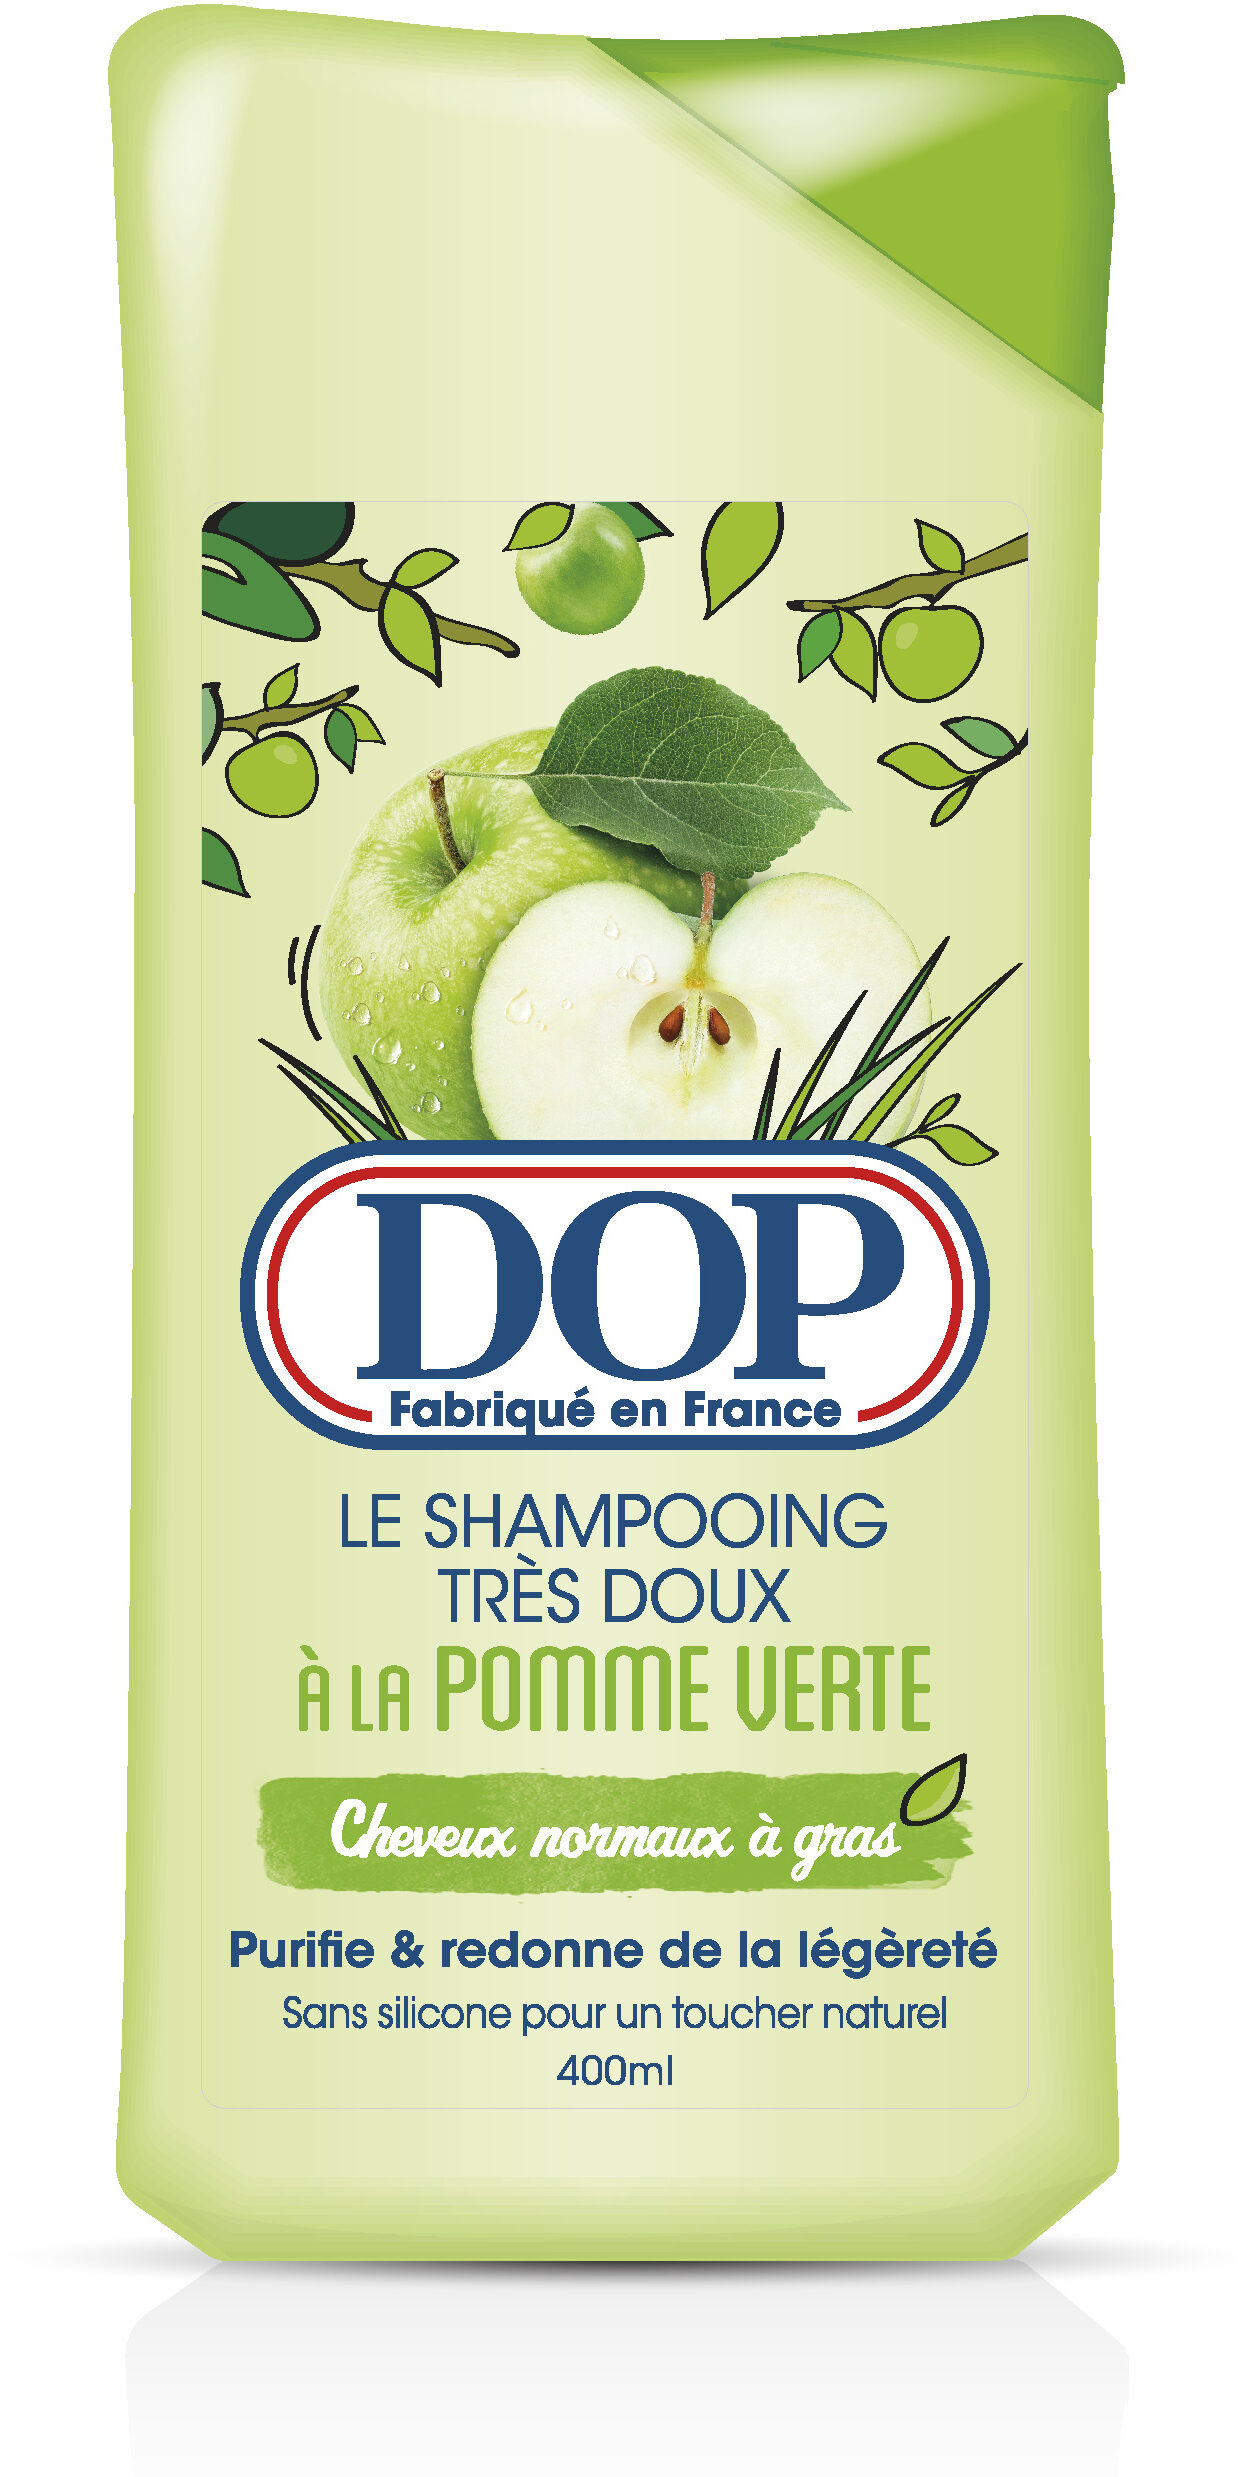 Shampoing très doux à la pomme verte - Produto - fr